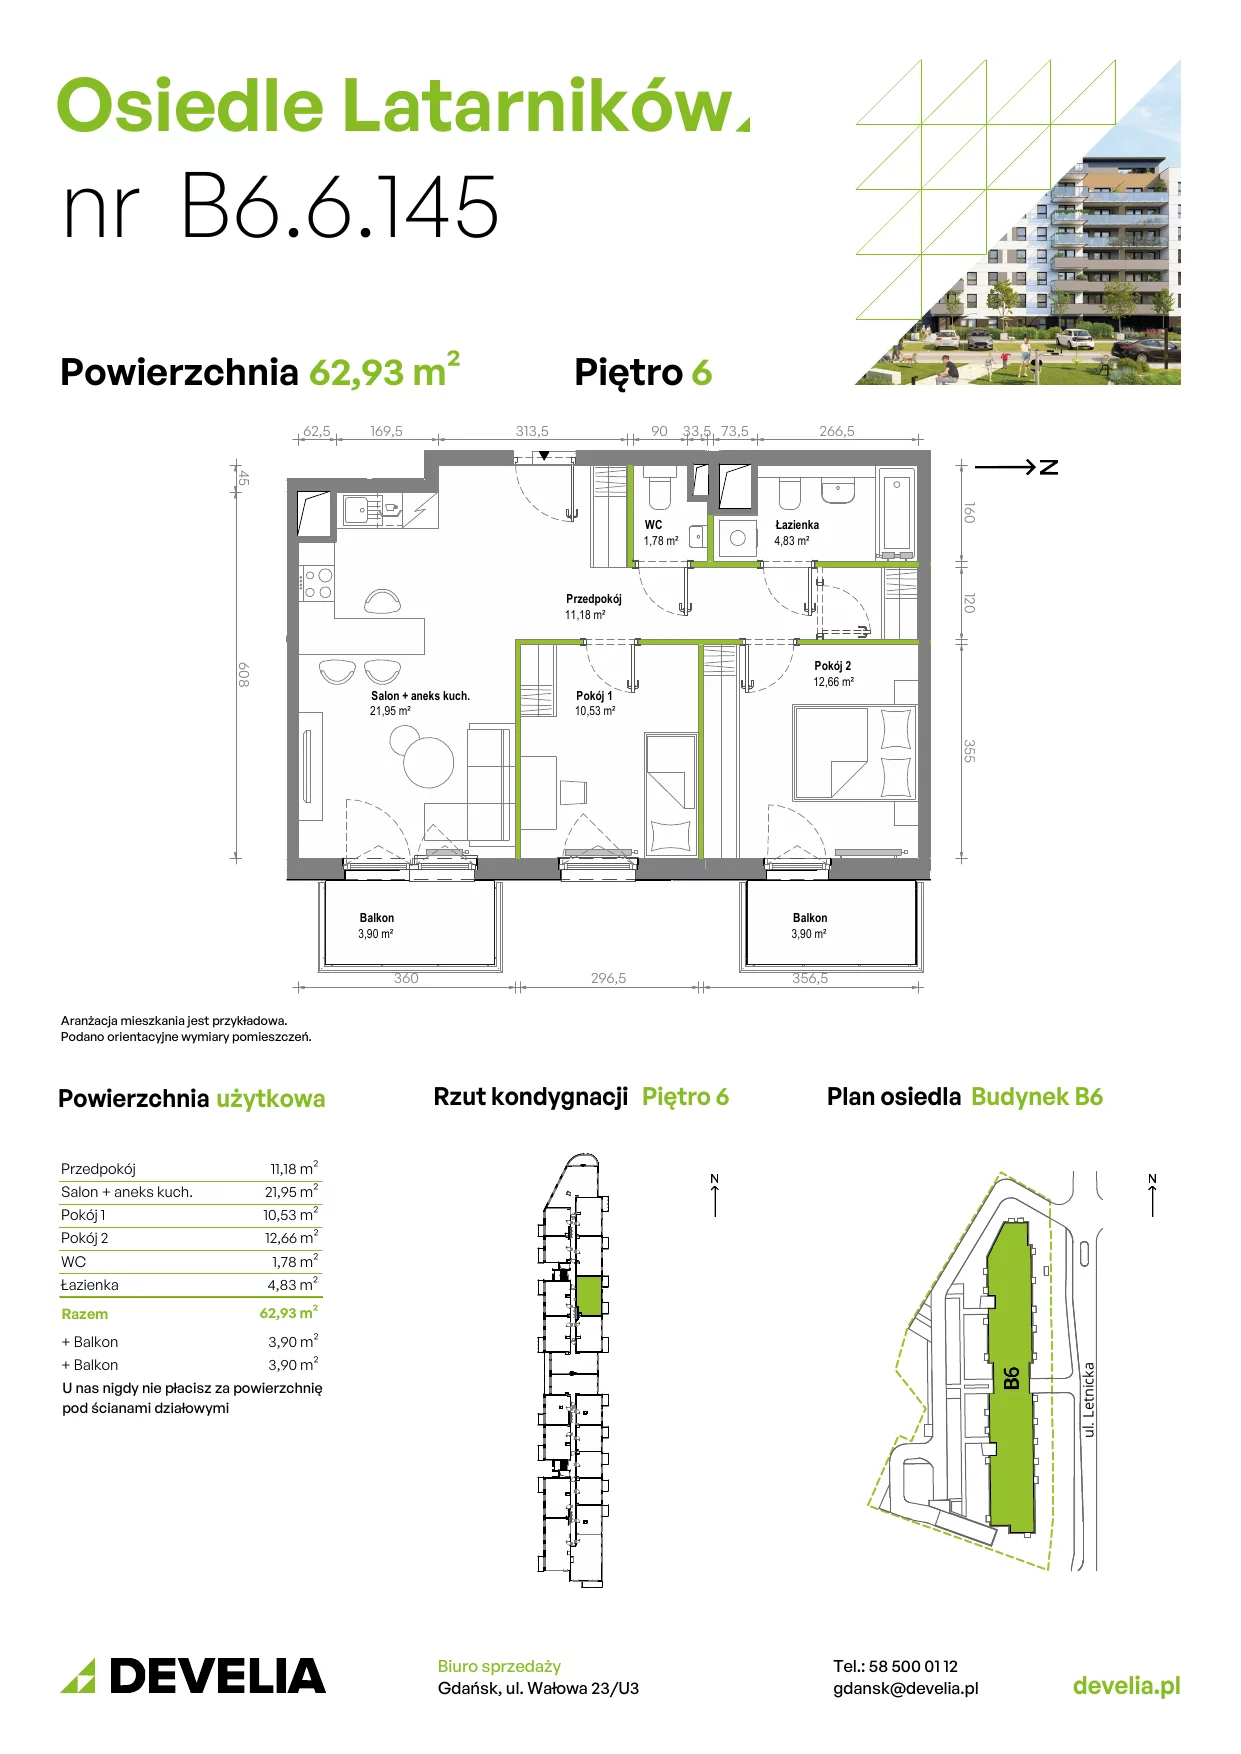 Mieszkanie 62,84 m², piętro 6, oferta nr B6.6.145, Osiedle Latarników, Gdańsk, Letnica, ul. Letnicka 1